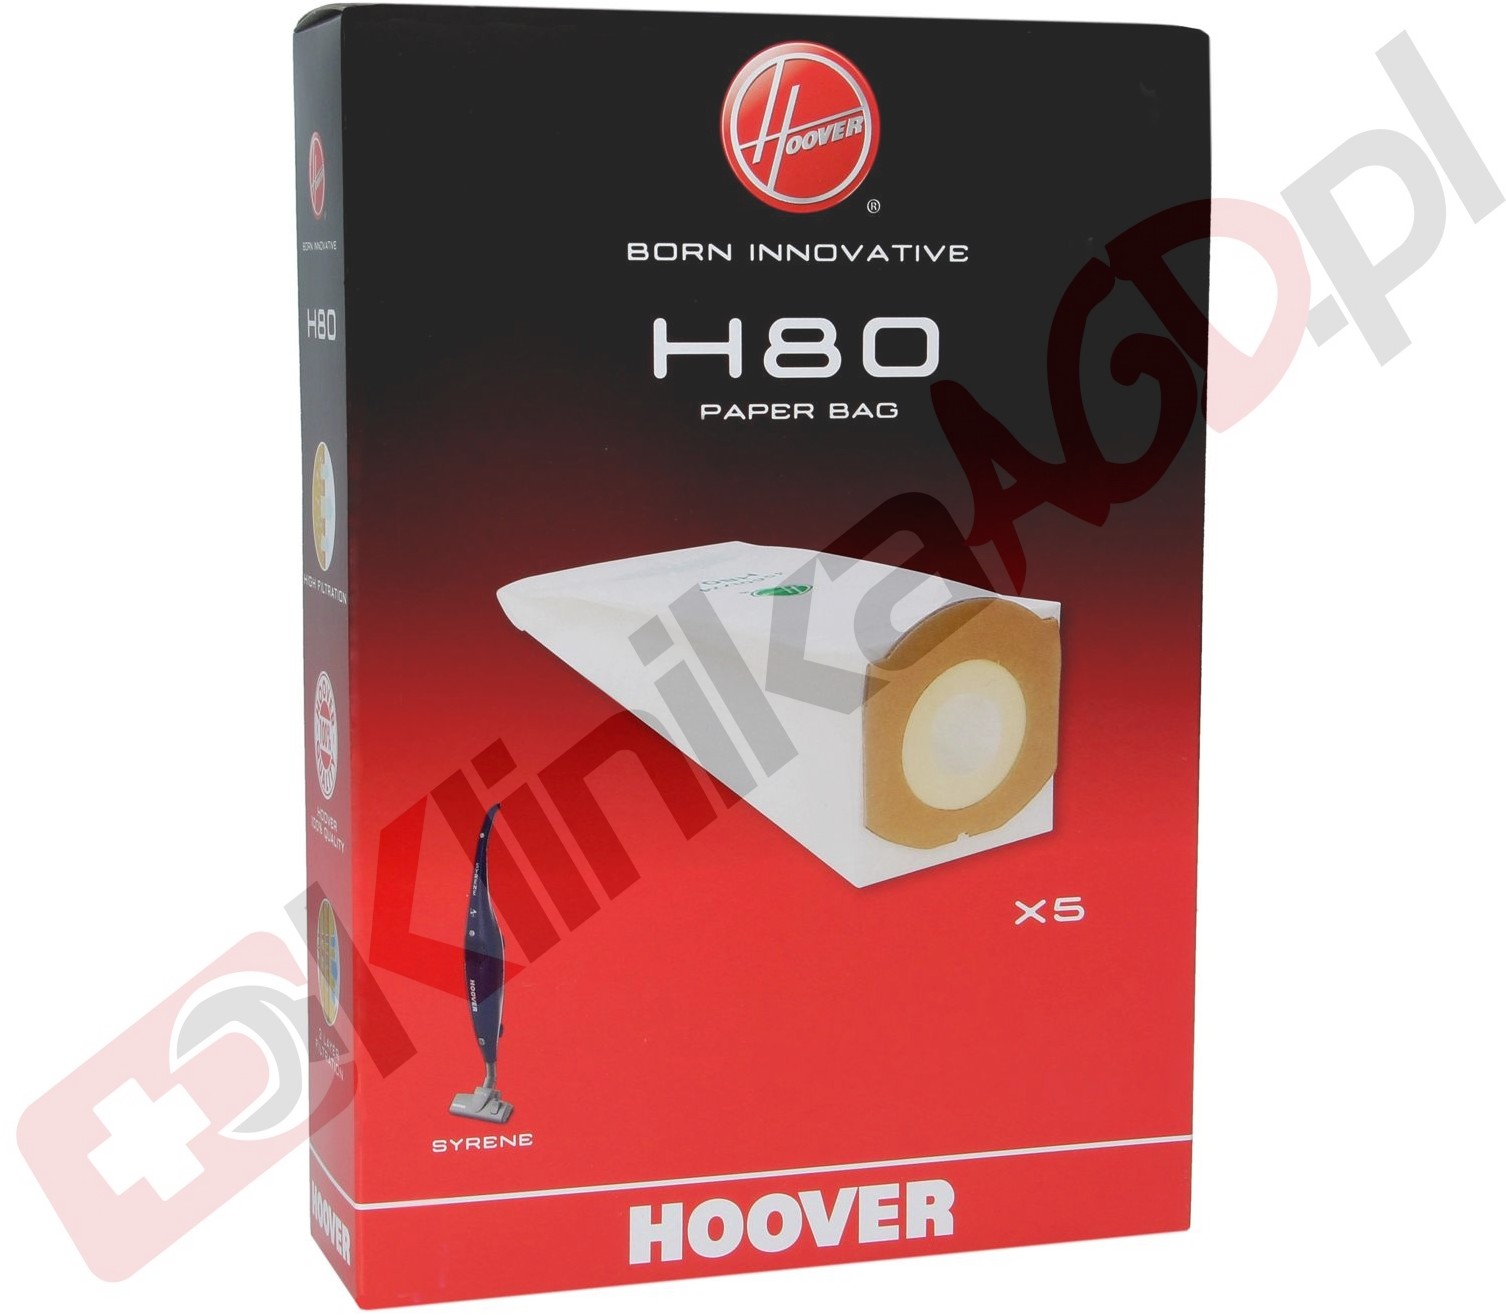 Hoover Candy Worki do odkurzacza H80 35601774